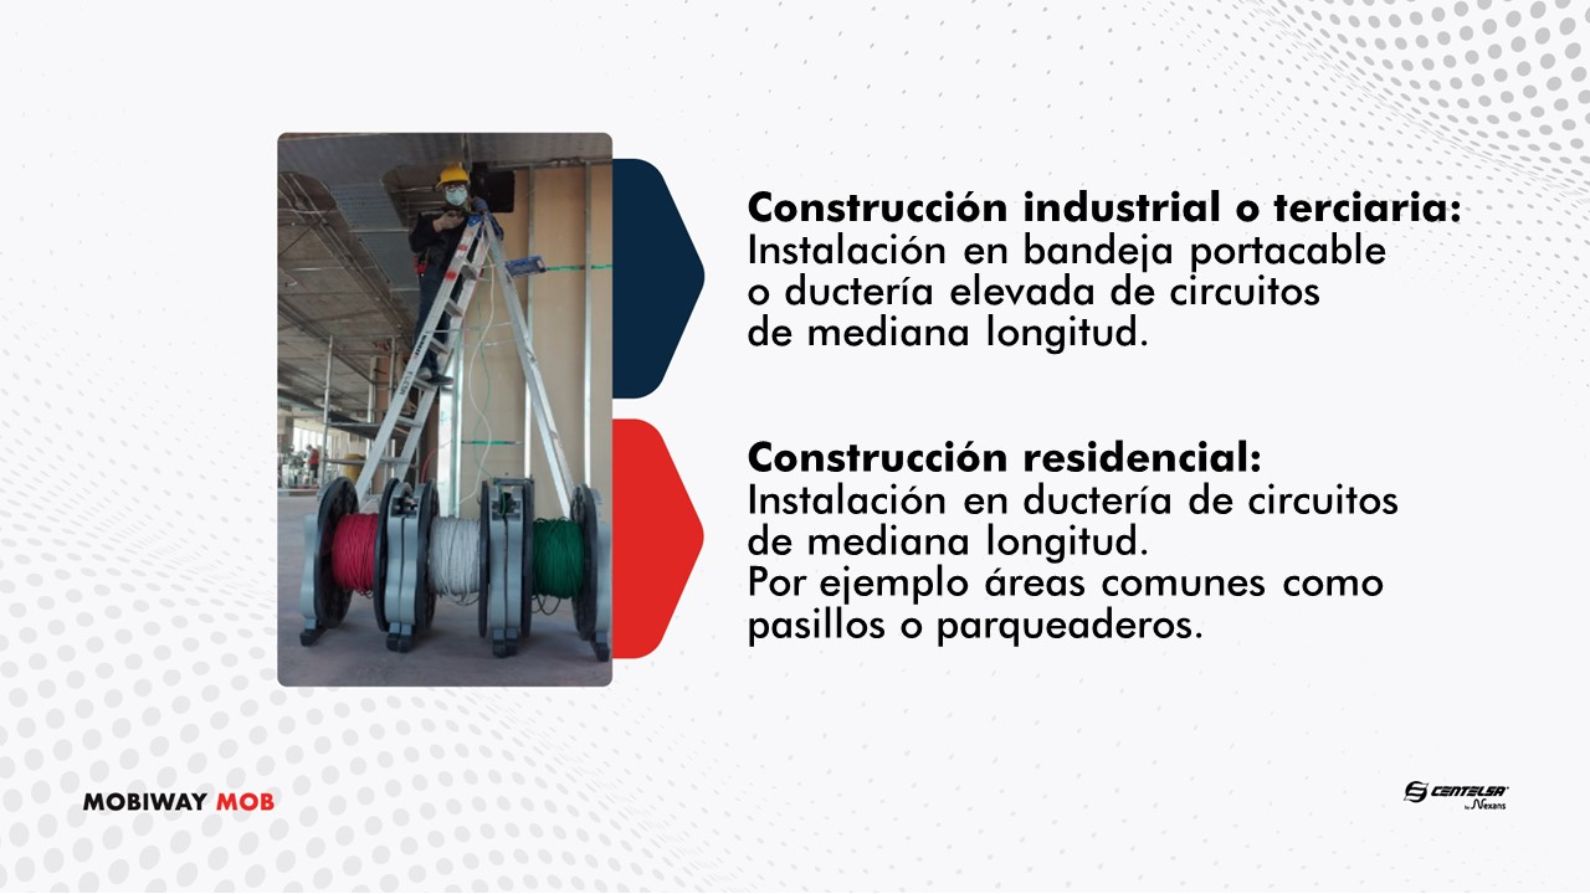 Casos de Usos recomendados - Mobiway MOB - Construcciones residencial e industriales/terciarias.